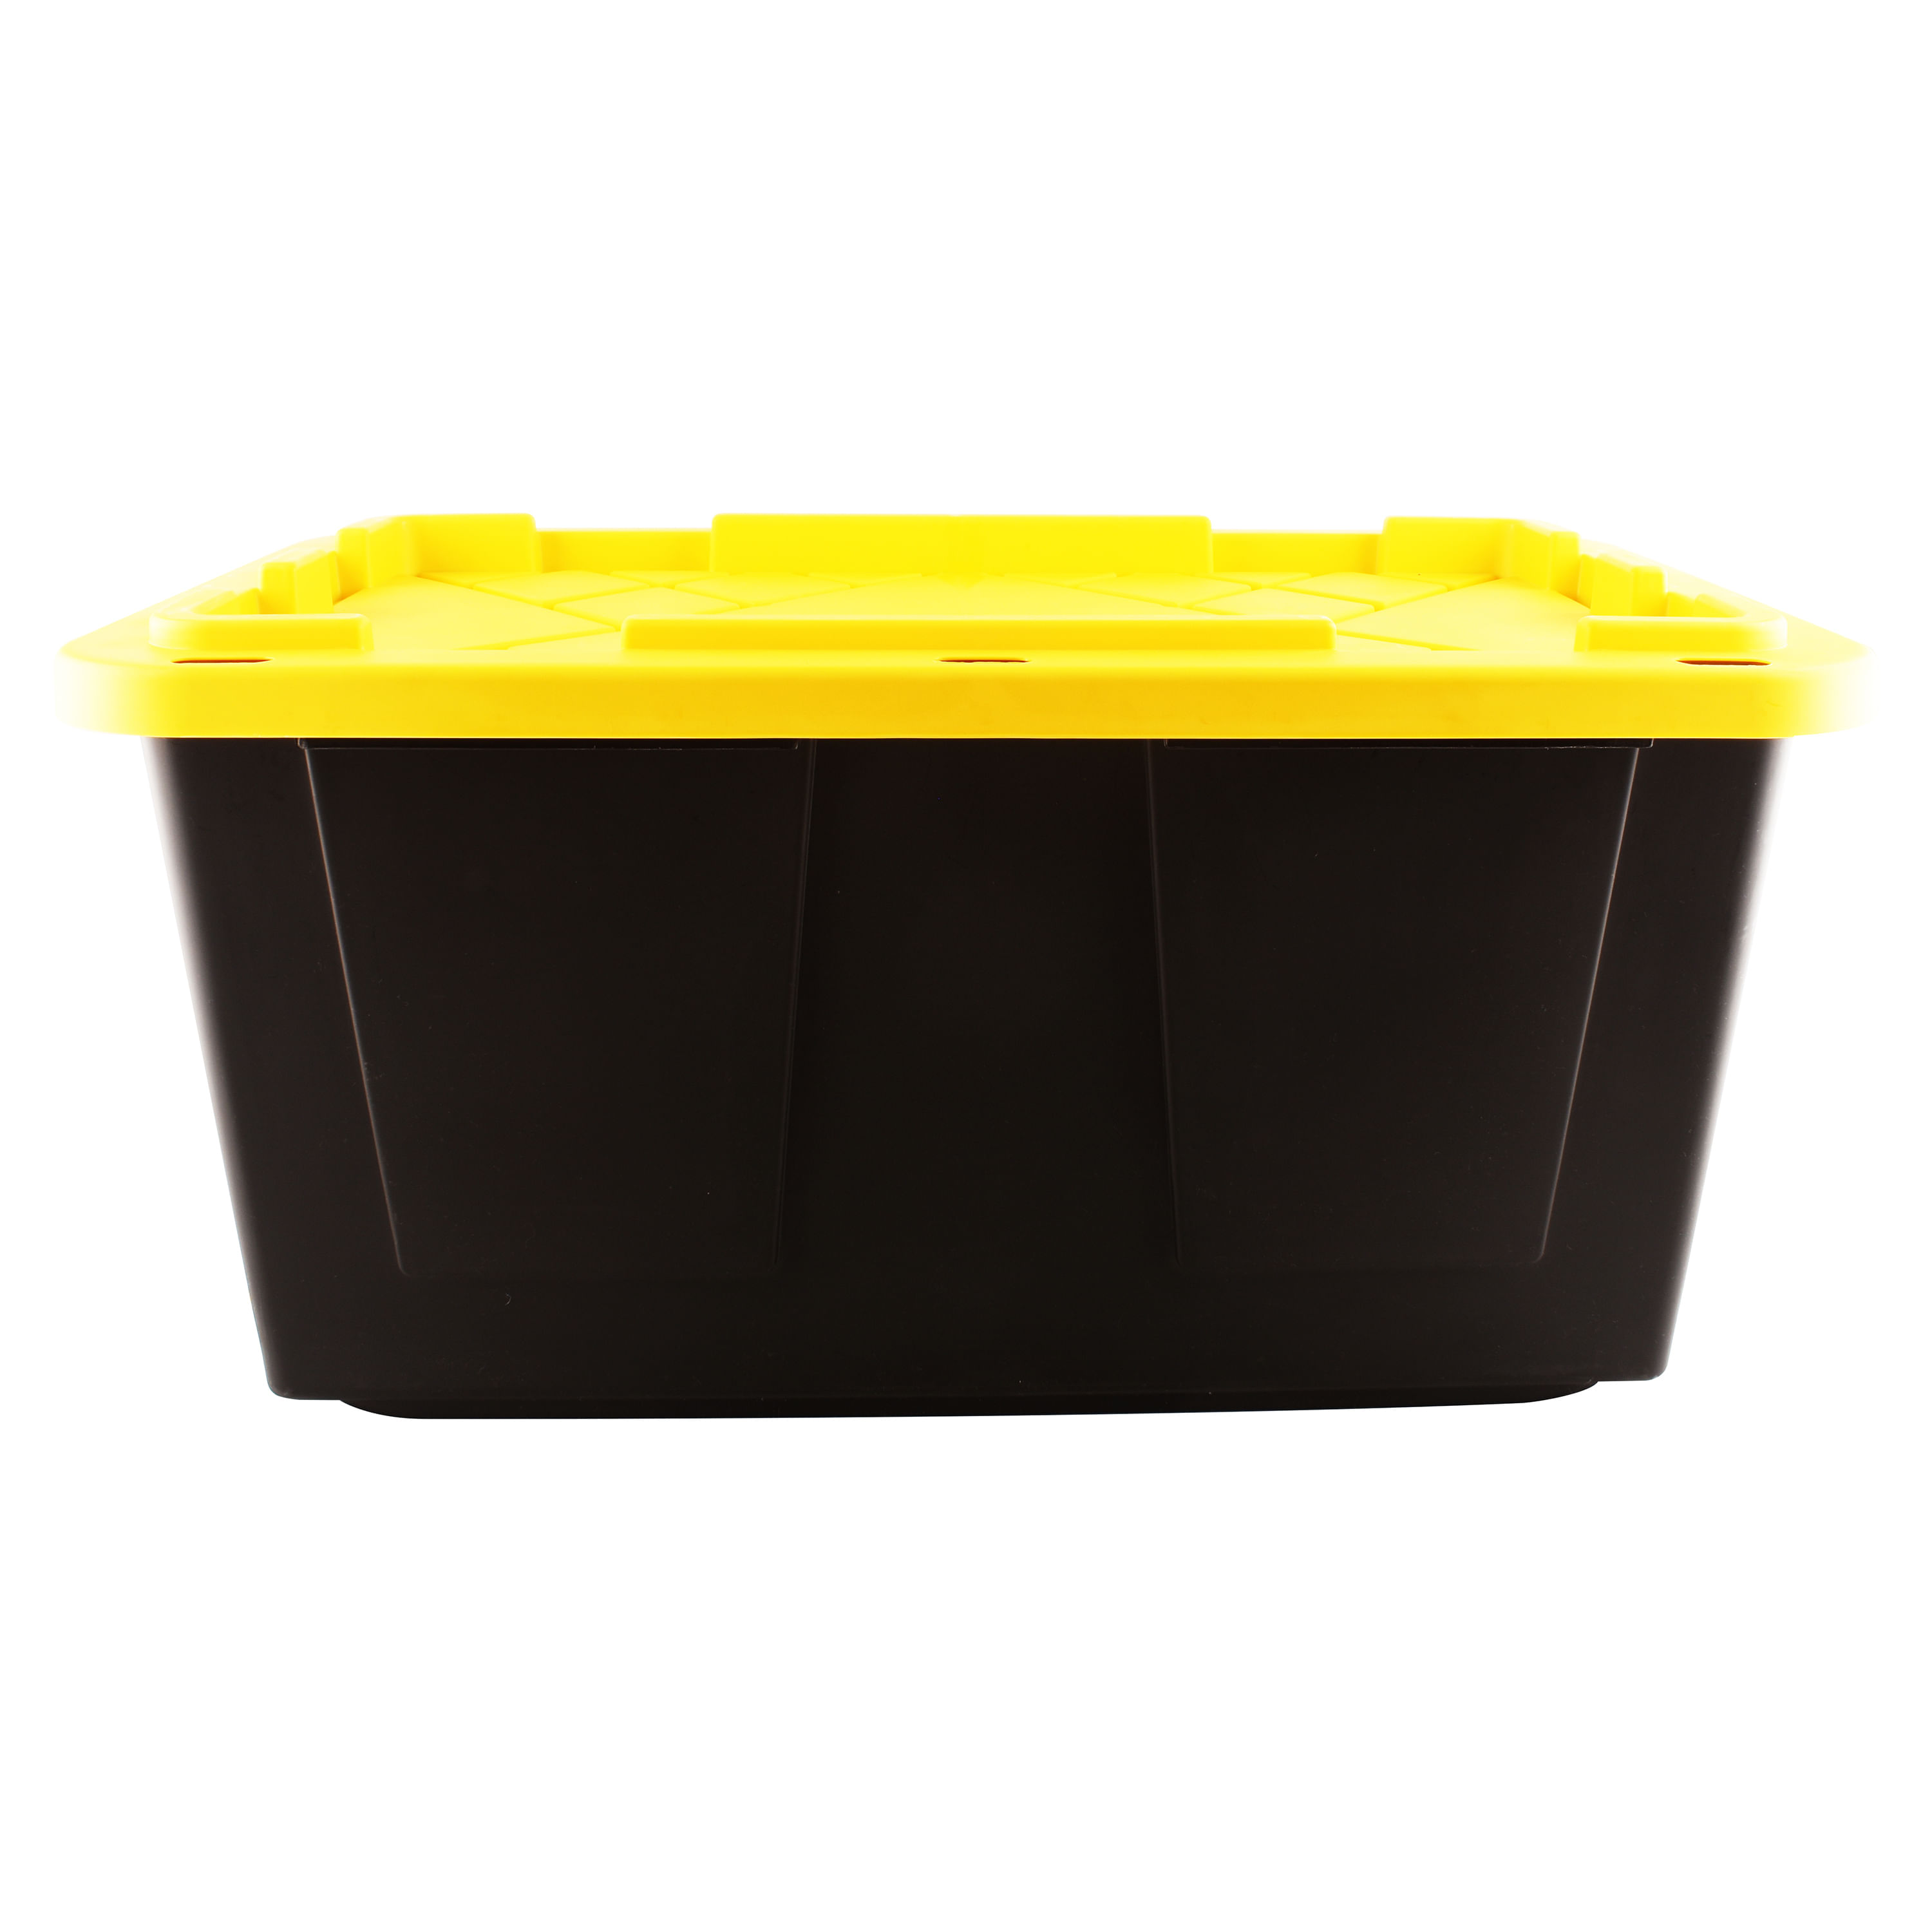 El Lagar: Ferreteria y materiales para construccion: Caja Plastica 102 L  Tapa Amarilla: Organización y limpieza